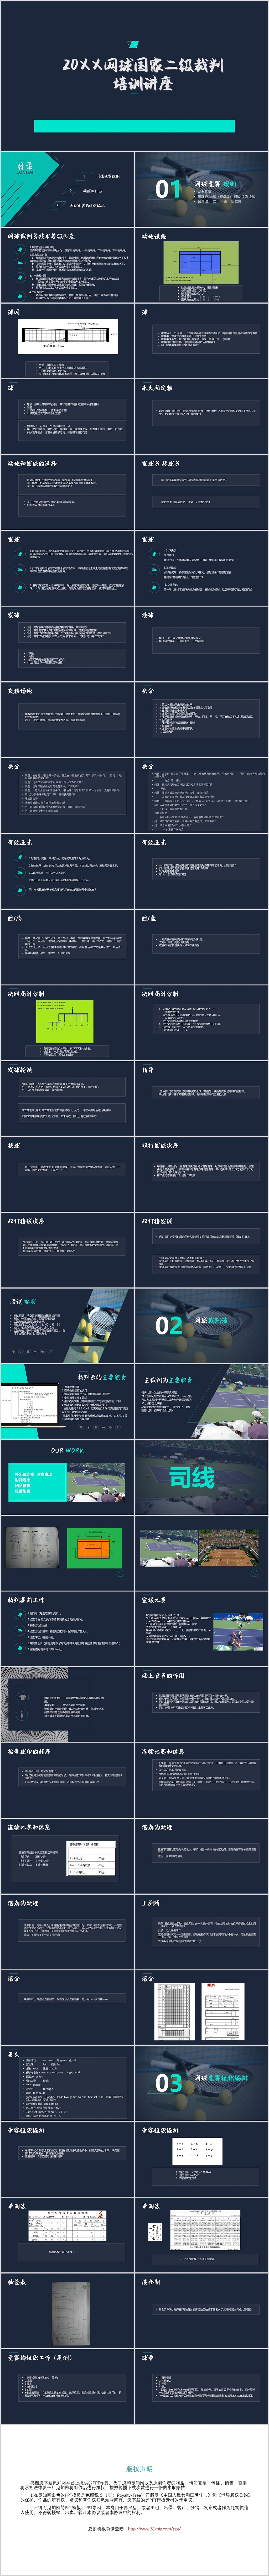 蓝黑简约商务网球比赛介绍PPT模板